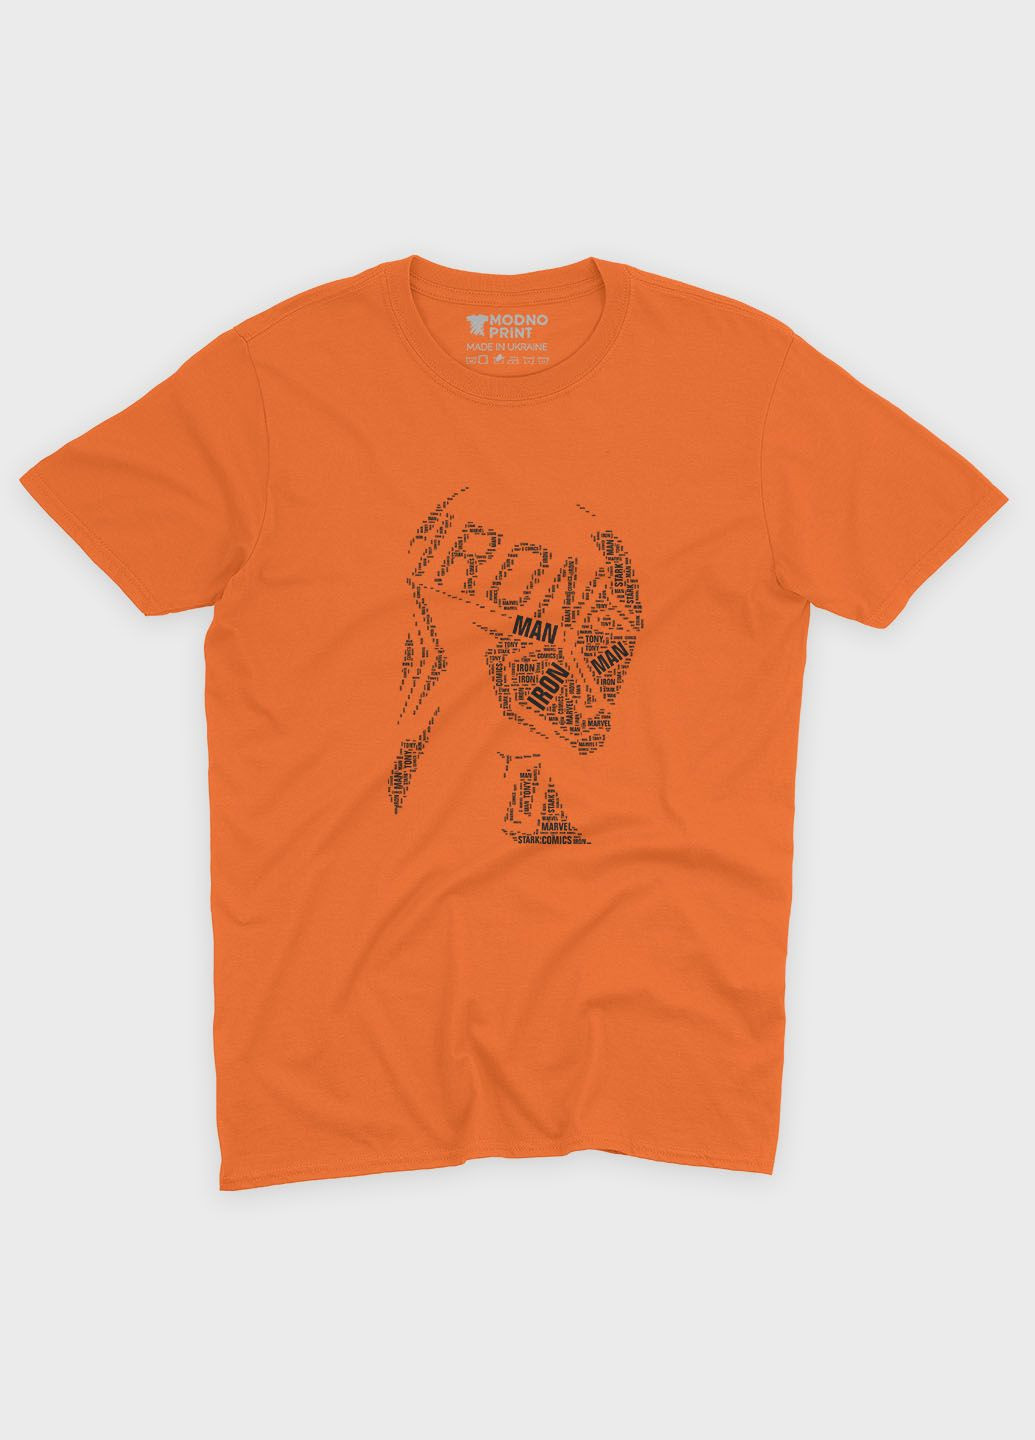 Помаранчева демісезонна футболка для хлопчика з принтом супергероя - залізна людина (ts001-1-ora-006-016-002-b) Modno